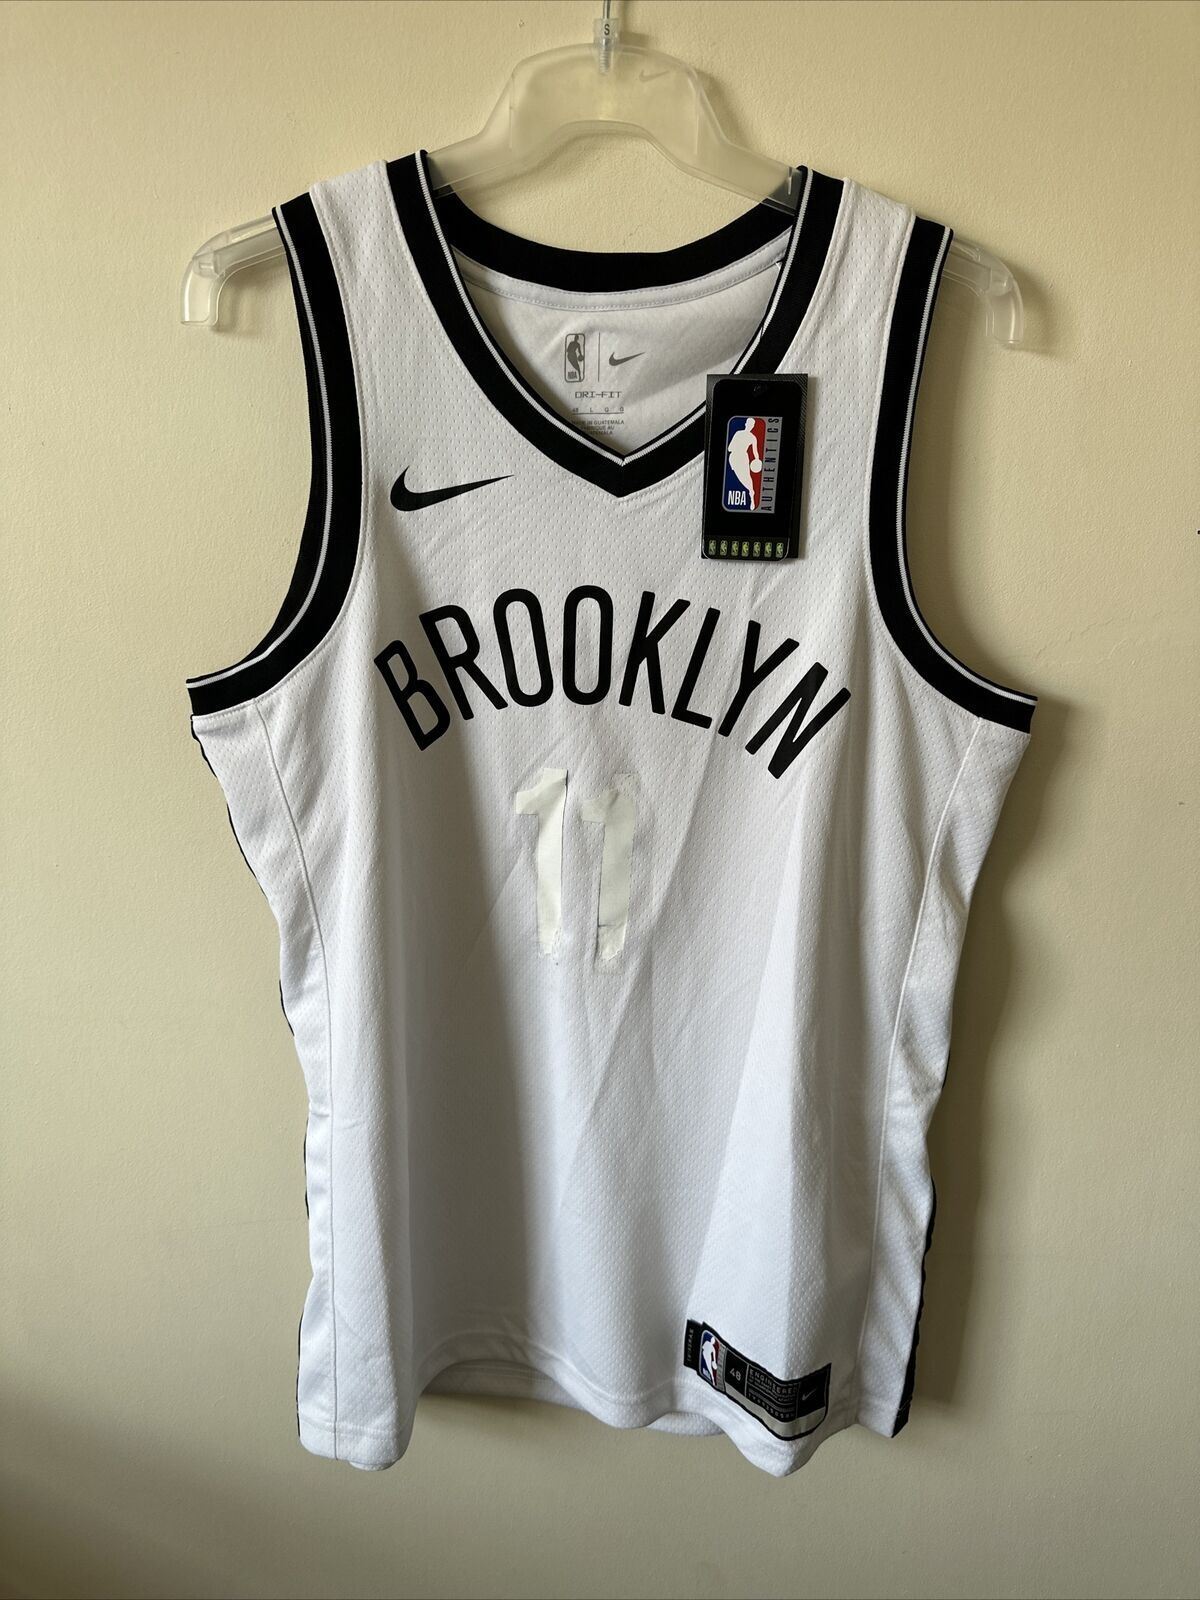 Nike NBA Brooklyn Nets Swingman Edition Jersey Men’s Large *DF*